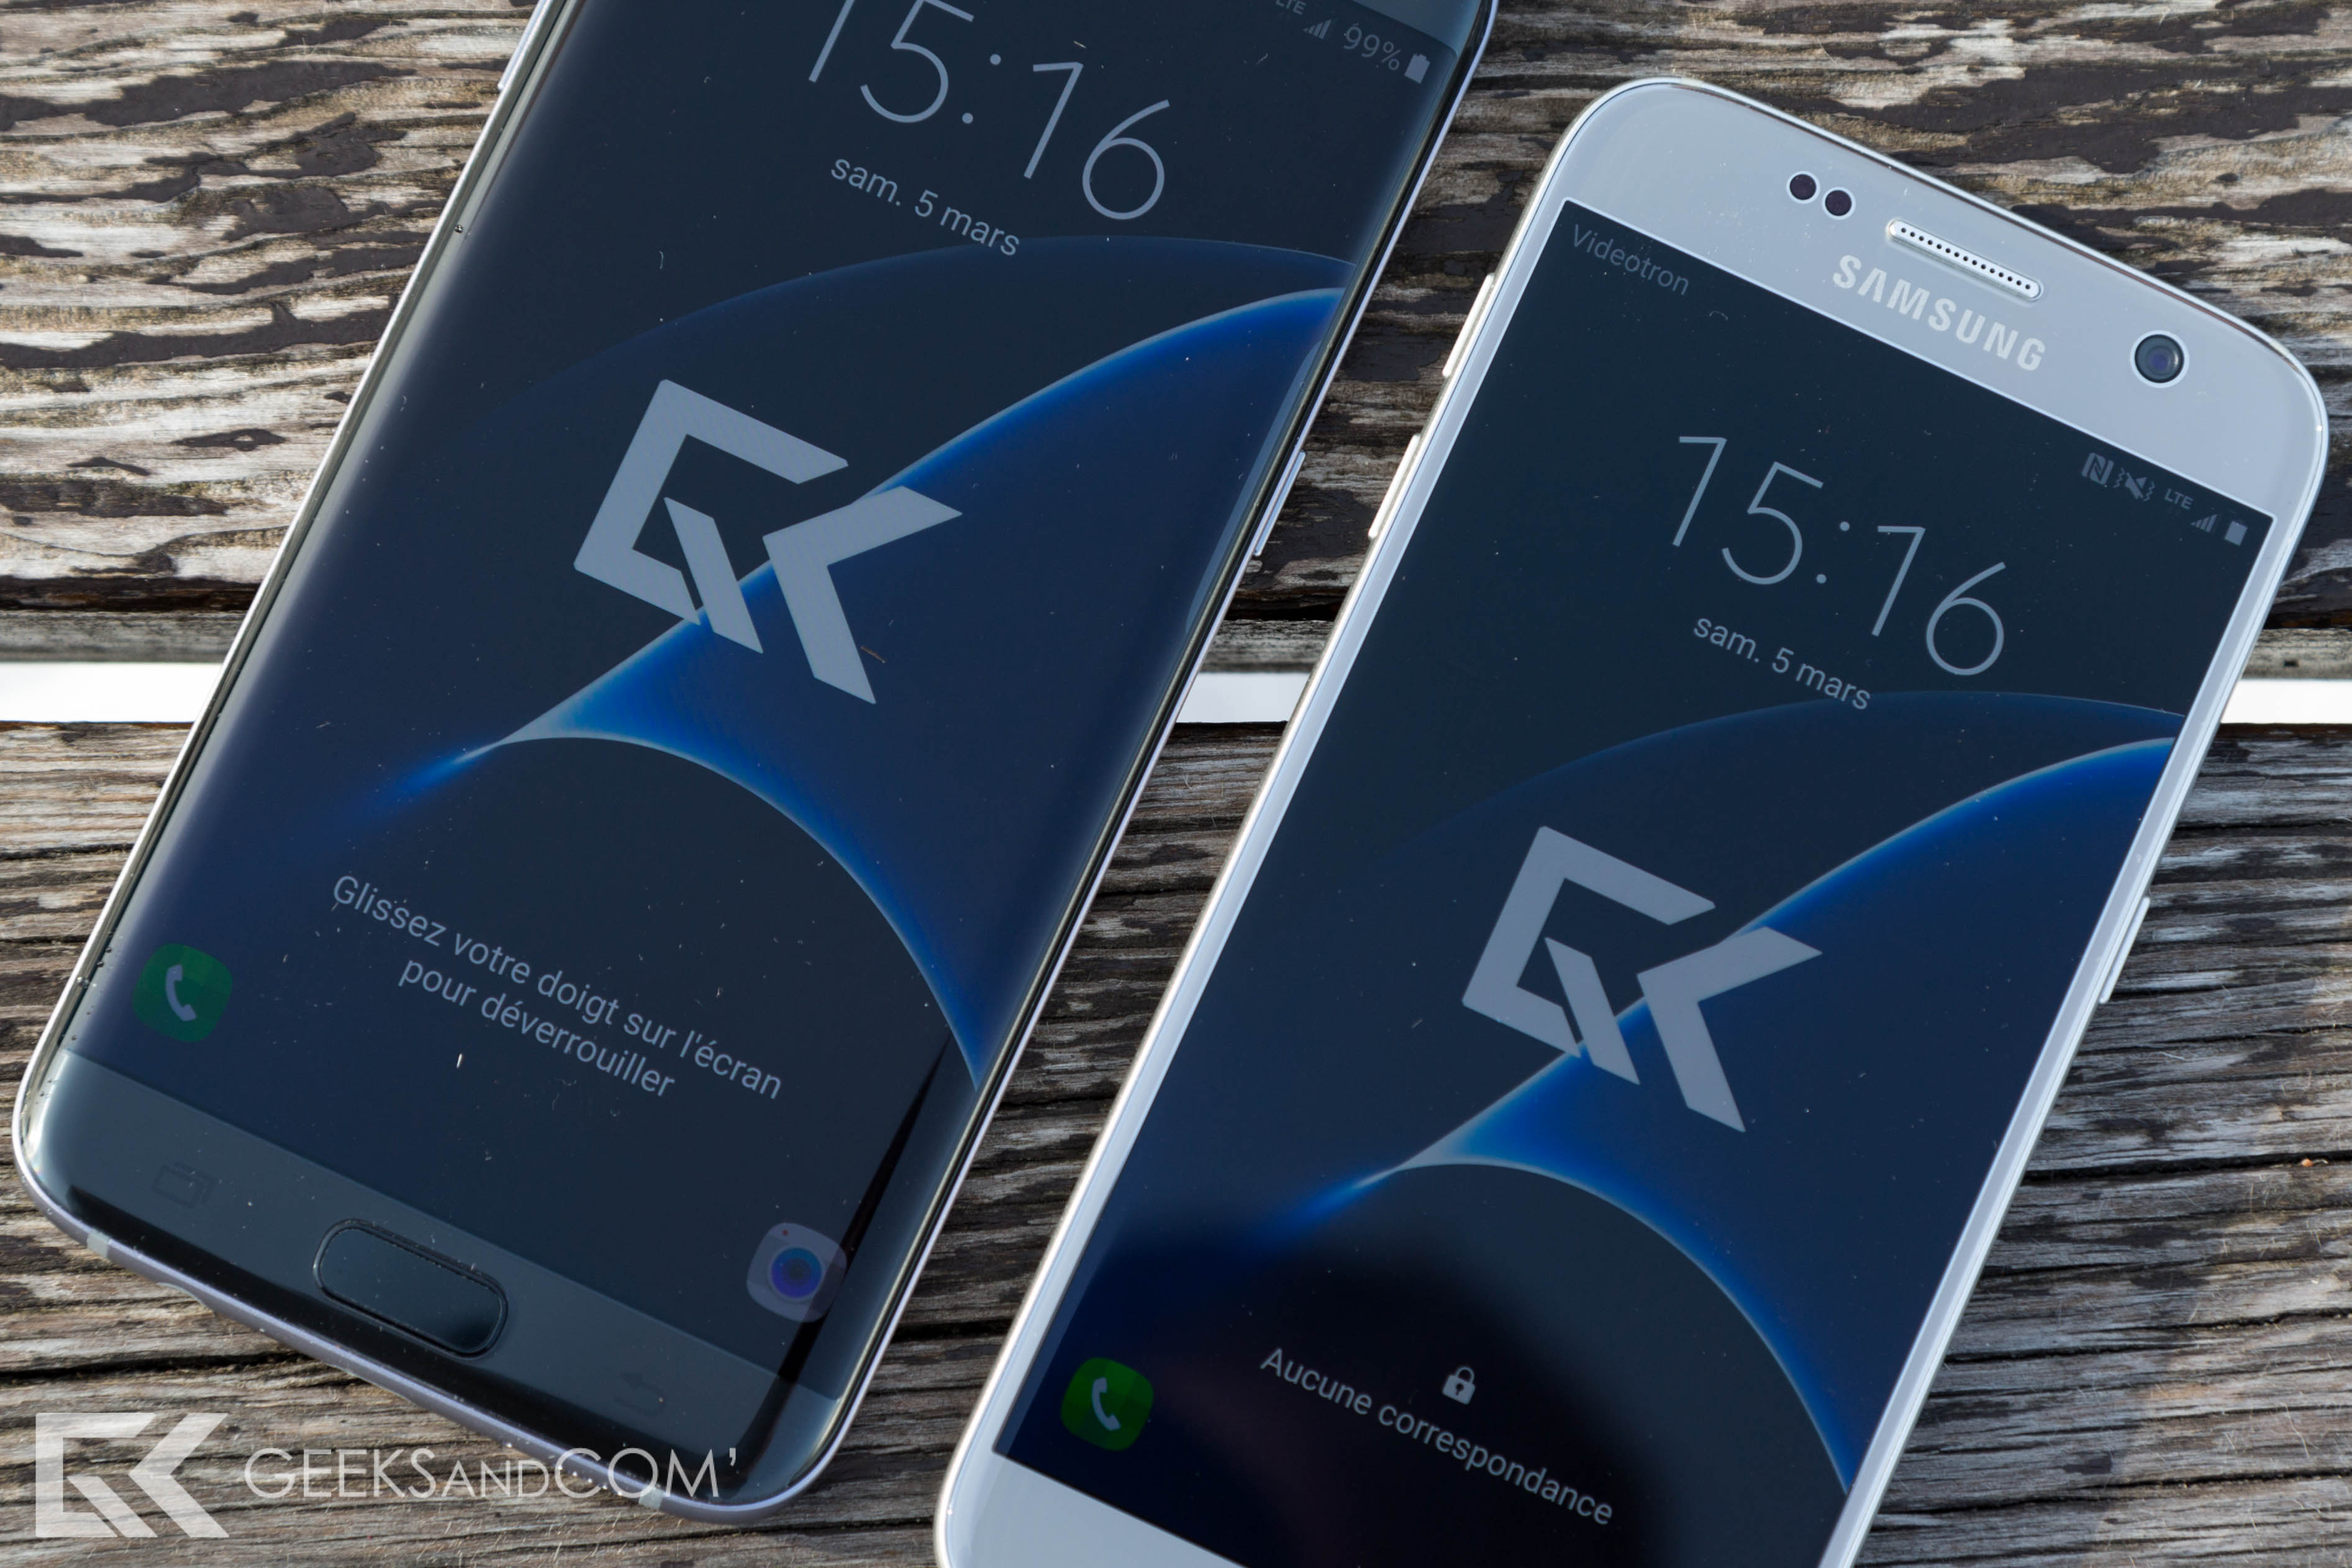 Samsung Galaxy S7 edge (à gauche) vs Galaxy S7 (à droite)